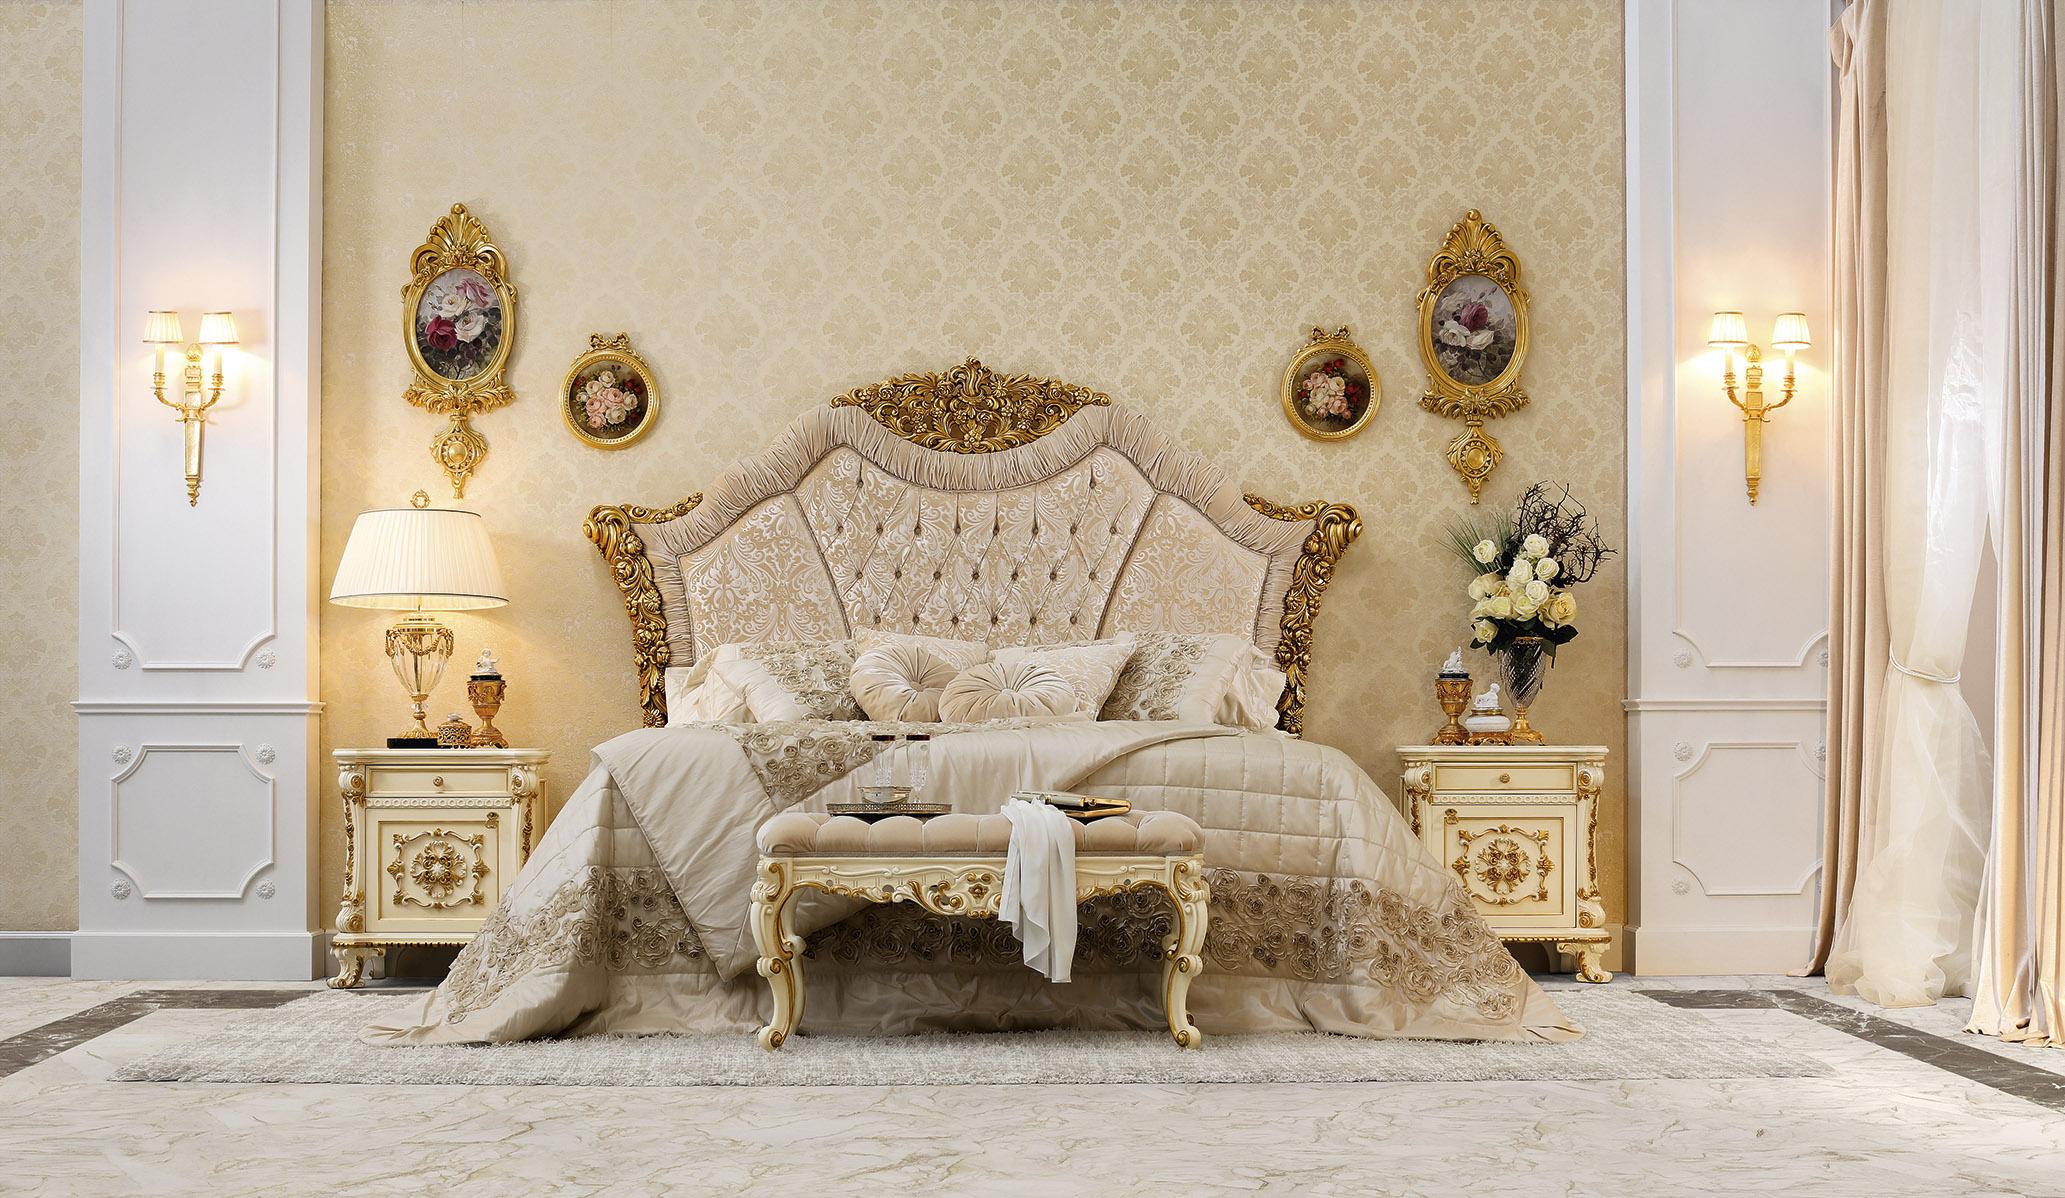 Dieser weiße Barock-Pouf von Modenese Luxury Interiors ist ein elegantes und zugleich bequemes Stück für eine klassische Einrichtung, das am besten in einem Wohnzimmer, Schlafzimmer, Salon oder Kinderzimmer zur Geltung kommt. Das schlichte Design